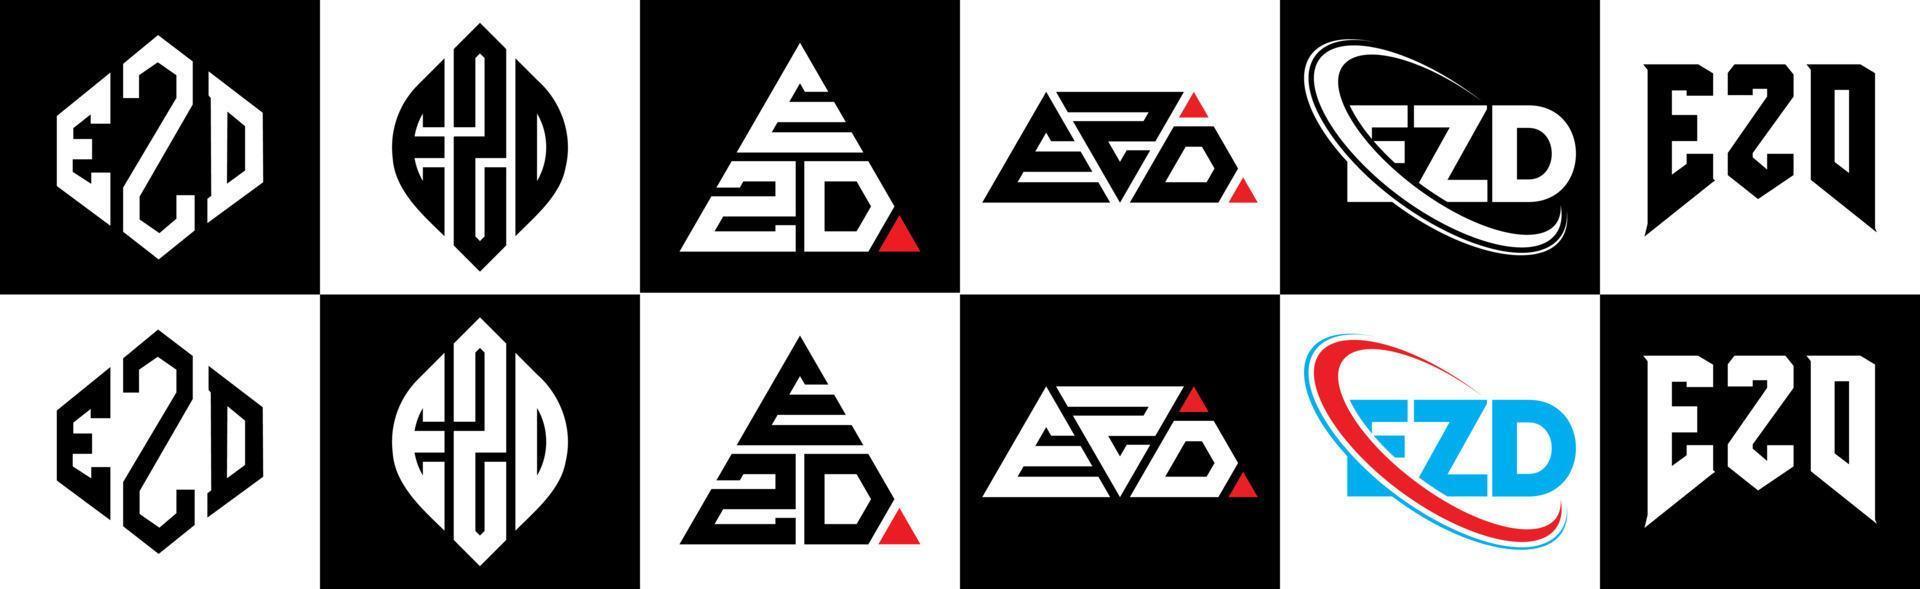 ezd-Buchstaben-Logo-Design in sechs Stilen. ezd-polygon, kreis, dreieck, sechseck, flacher und einfacher stil mit schwarz-weißem buchstabenlogo in einer zeichenfläche. ezd minimalistisches und klassisches logo vektor